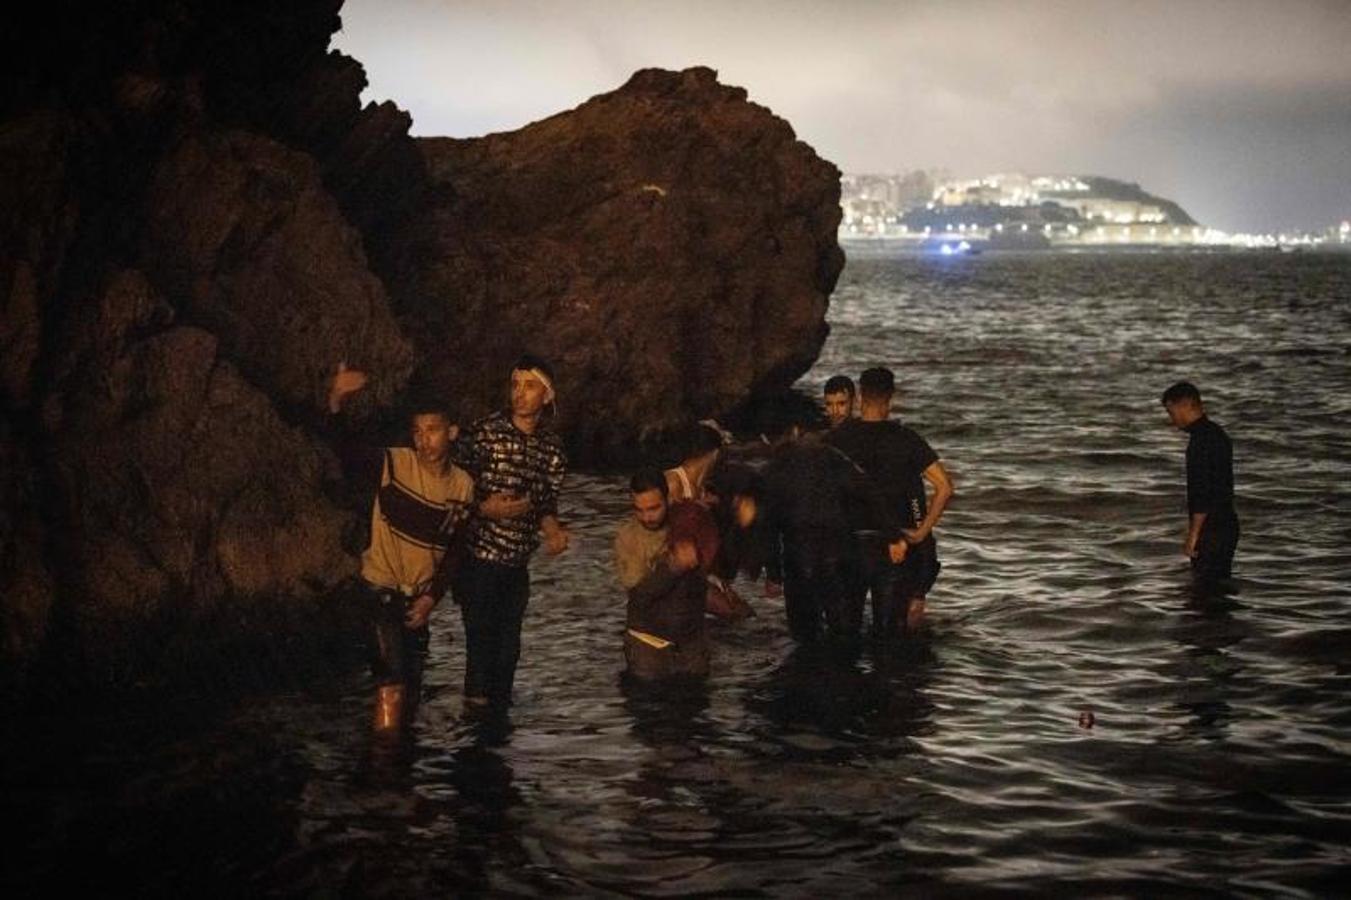 Los migrantes marroquíes caminan hacia aguas poco profundas en la ciudad norteña de Fnideq mientras intentan cruzar la frontera de Marruecos al enclave español de Ceuta.